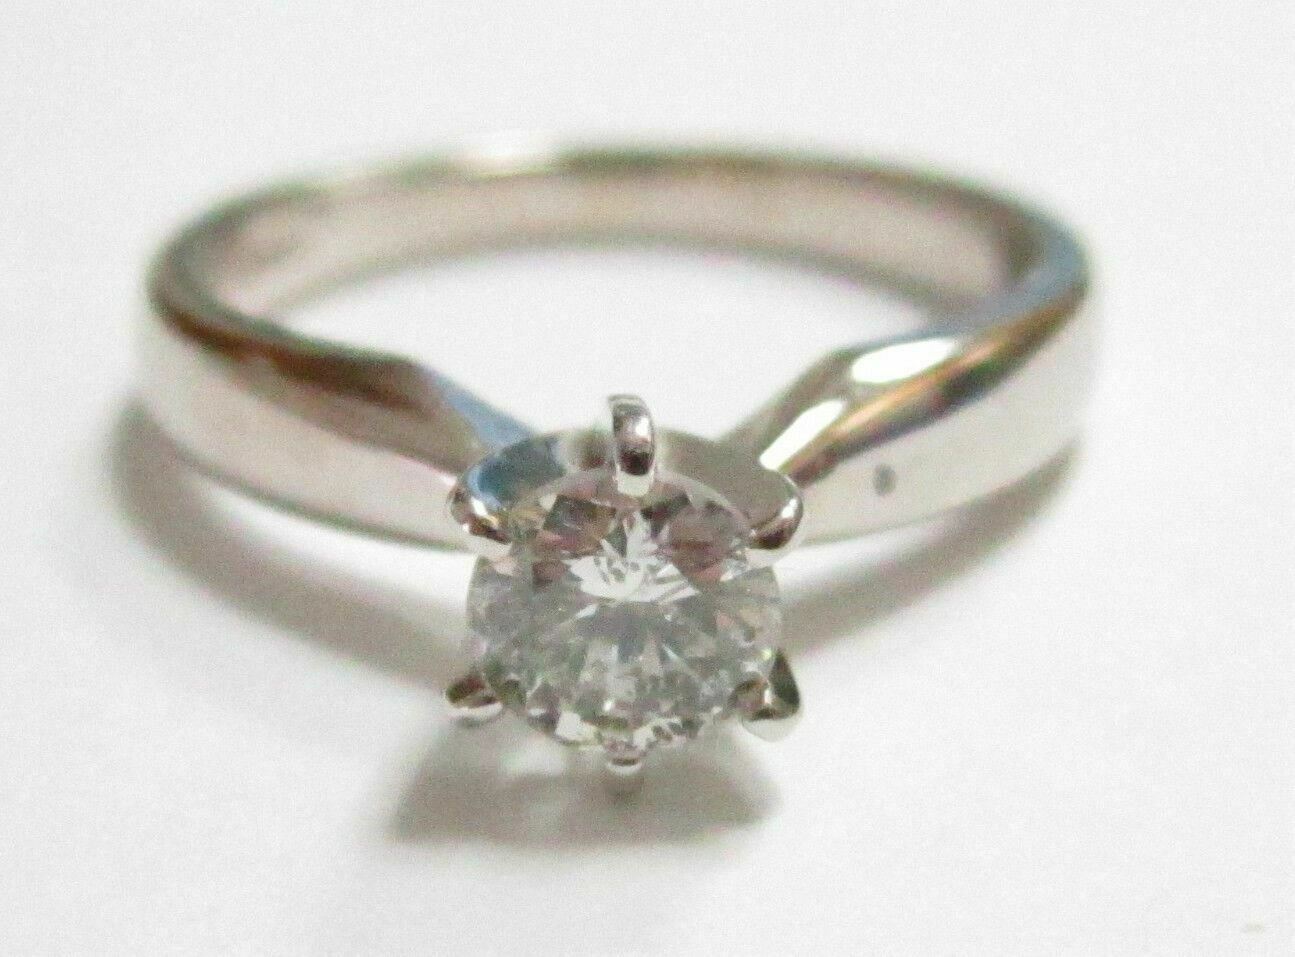 FINE SOLITAIRE Engagement Diamond Ring Designer Setting W/ APPRAISAL CERT